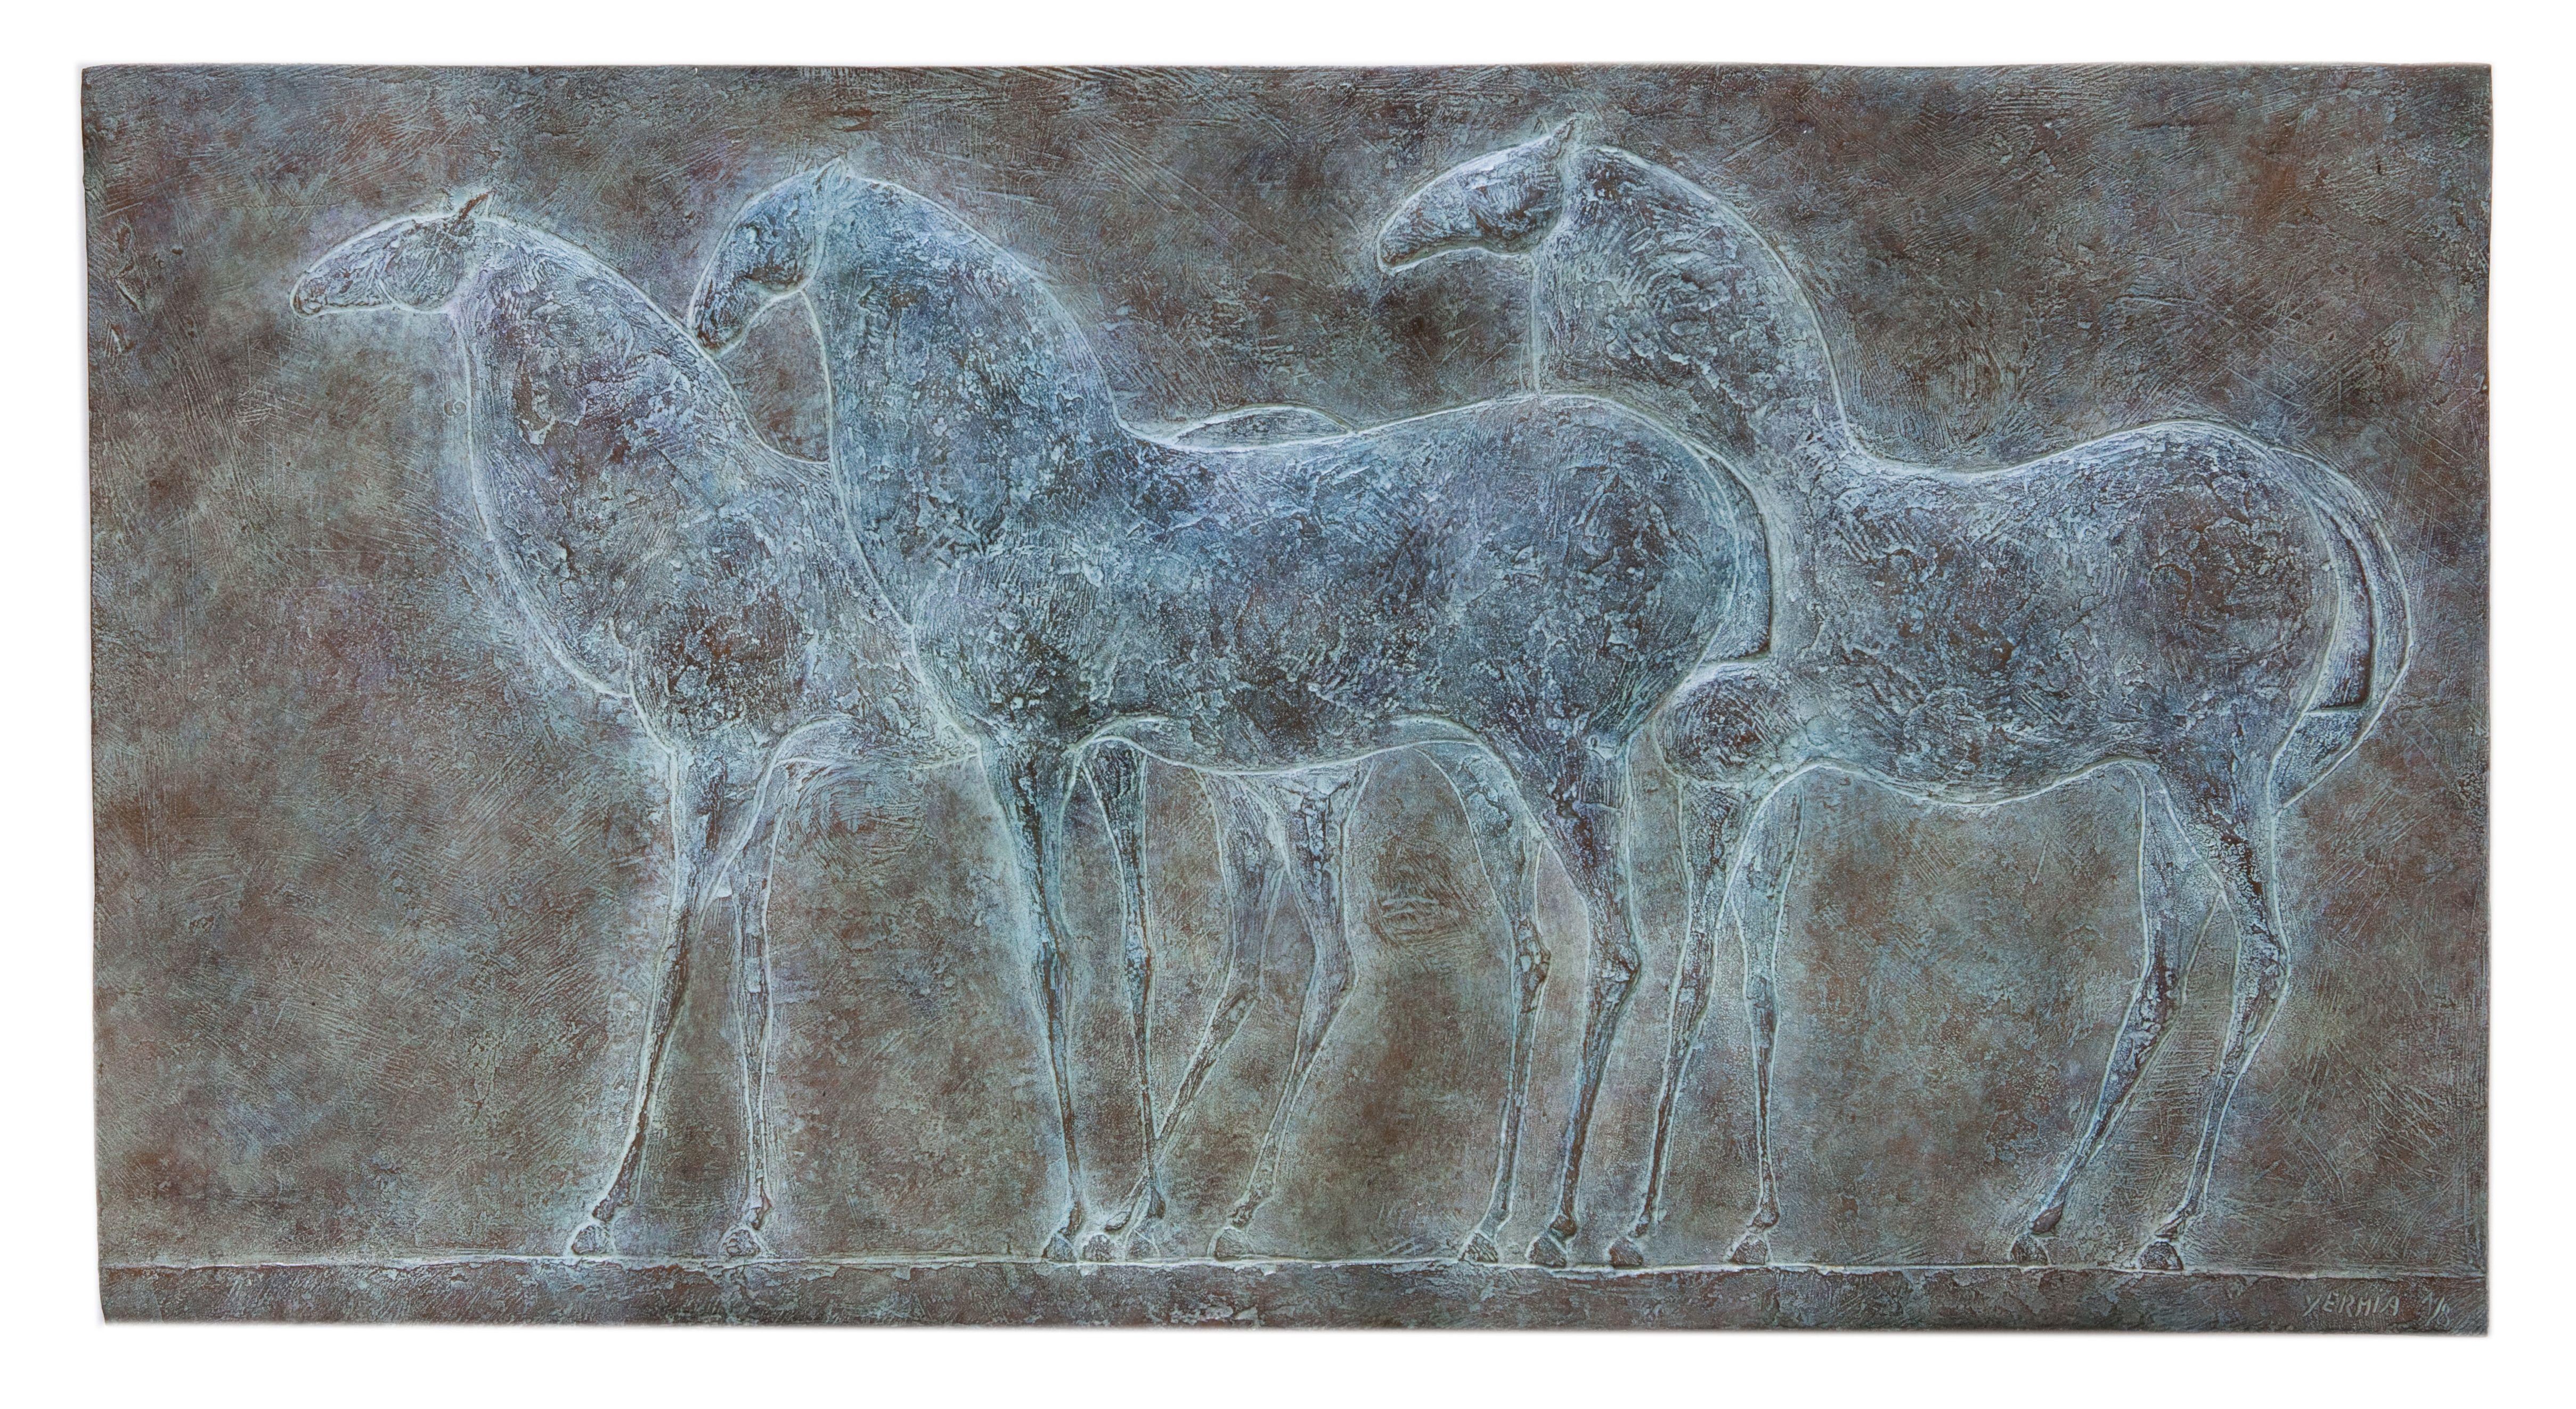 Three Horses ist eine Basrelief-Bronzeskulptur des französischen zeitgenössischen Künstlers Pierre Yermia mit den Maßen 42 × 81 × 2 cm (16,5 × 31,9 × 0,8 in). 
Die Skulptur ist signiert und nummeriert, gehört zu einer limitierten Auflage von 8